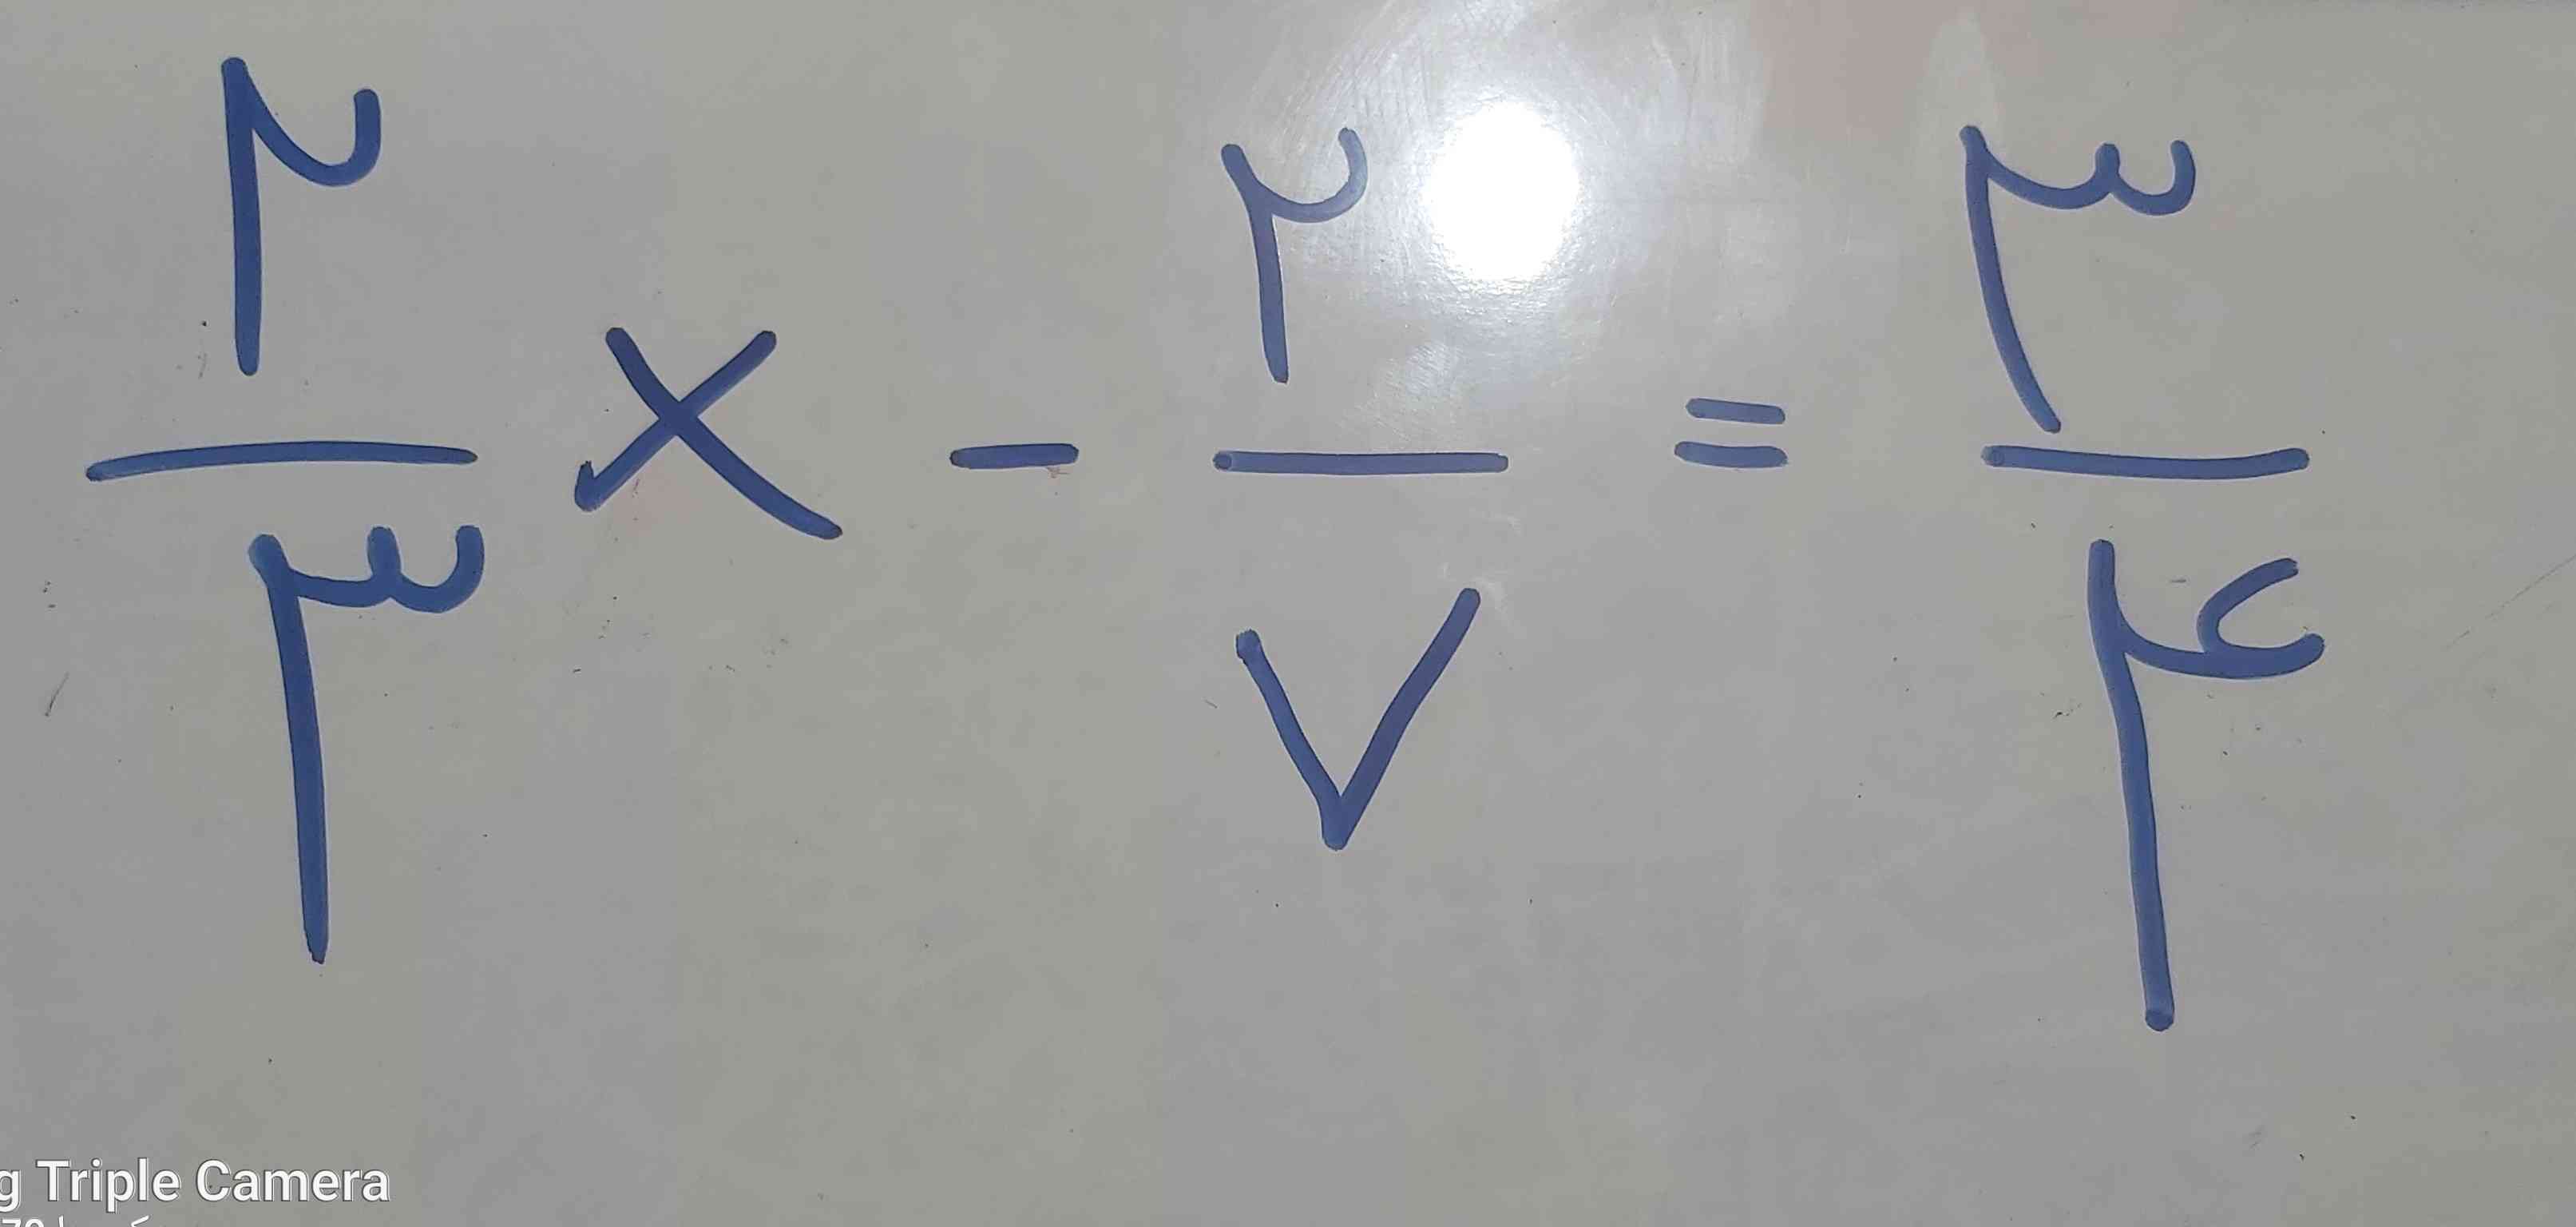 لطفا جواب این معادله را بنویسید 
اگه درست باشه تاج میدم